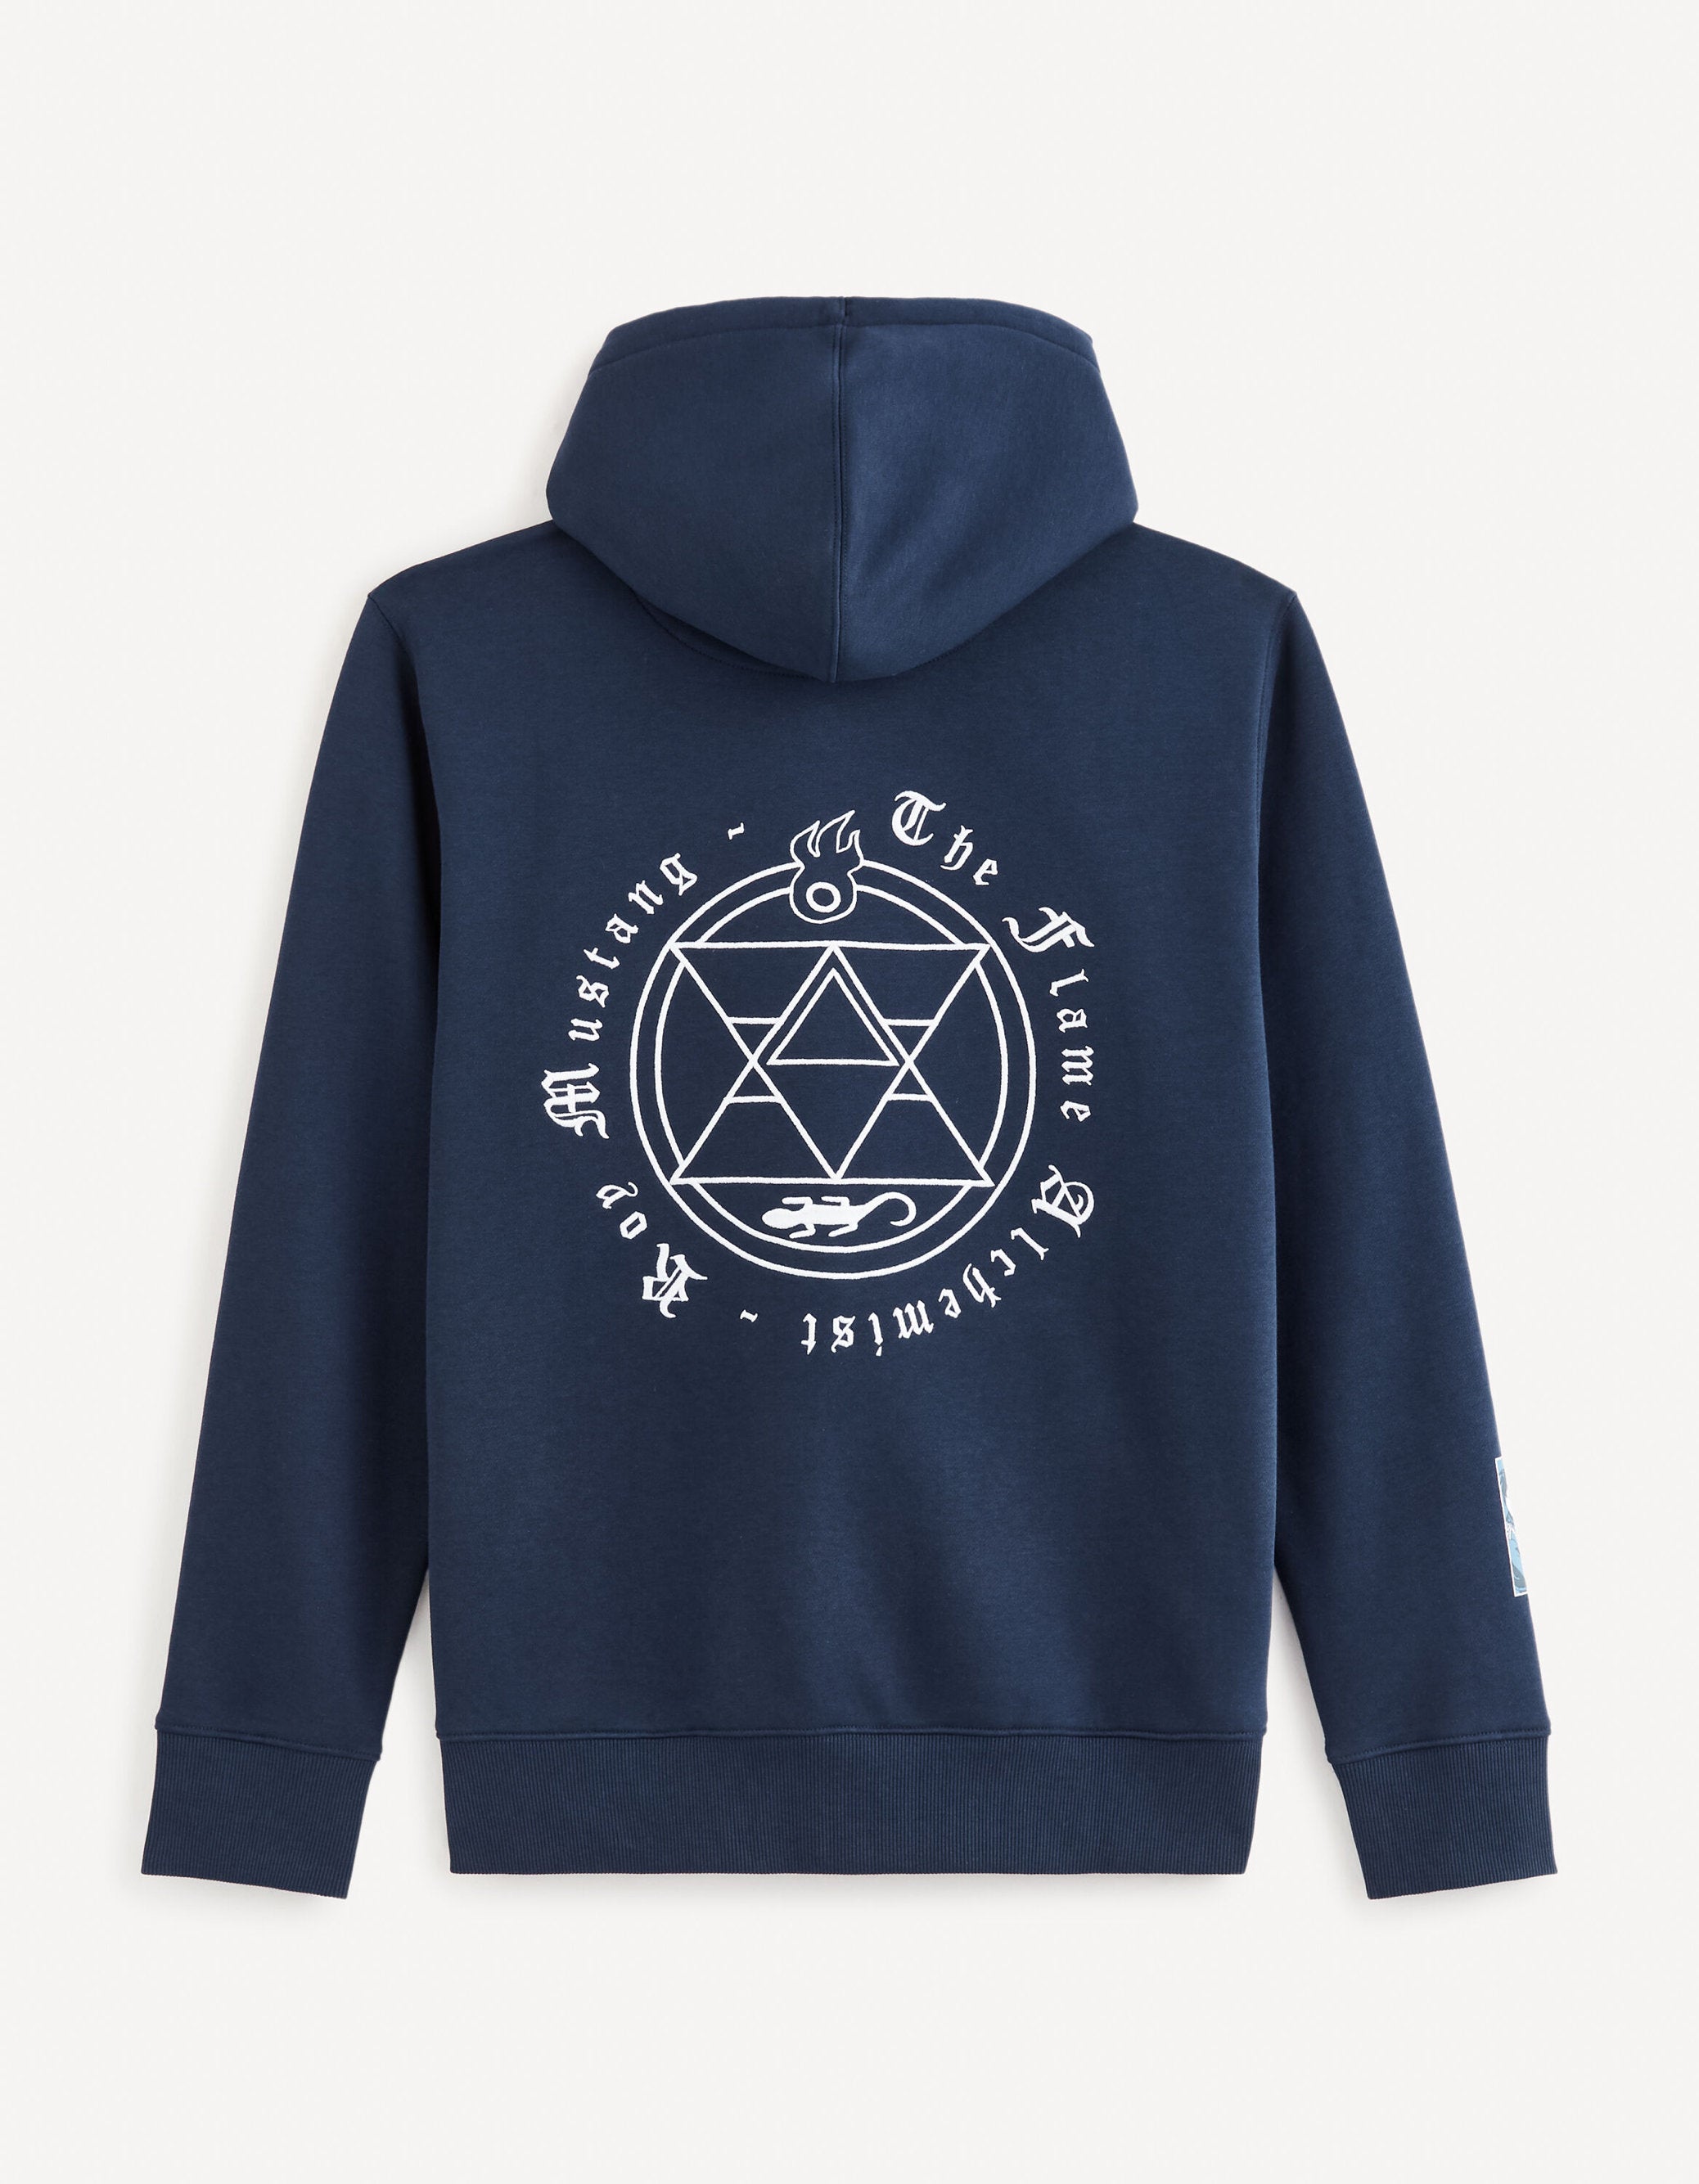 Fullmetal Alchemist: Brotherhood - Sweatshirt_LDEFMASW_BLUE_07